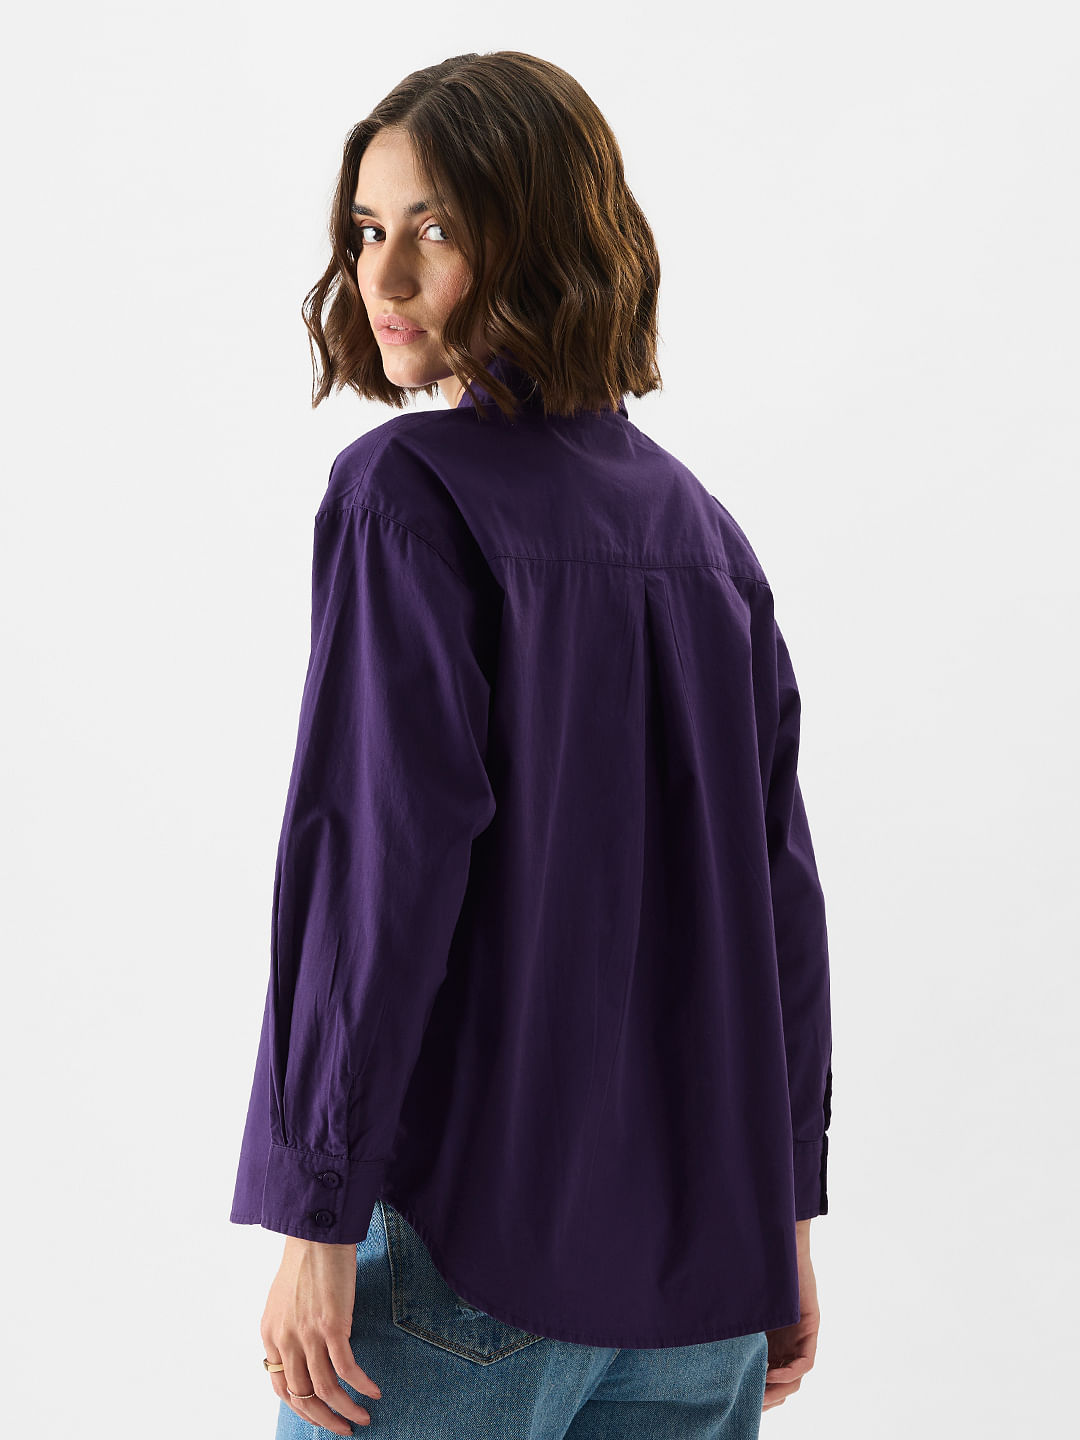 Buy Solids: Purple Haze Women Boyfriend Shirts Online